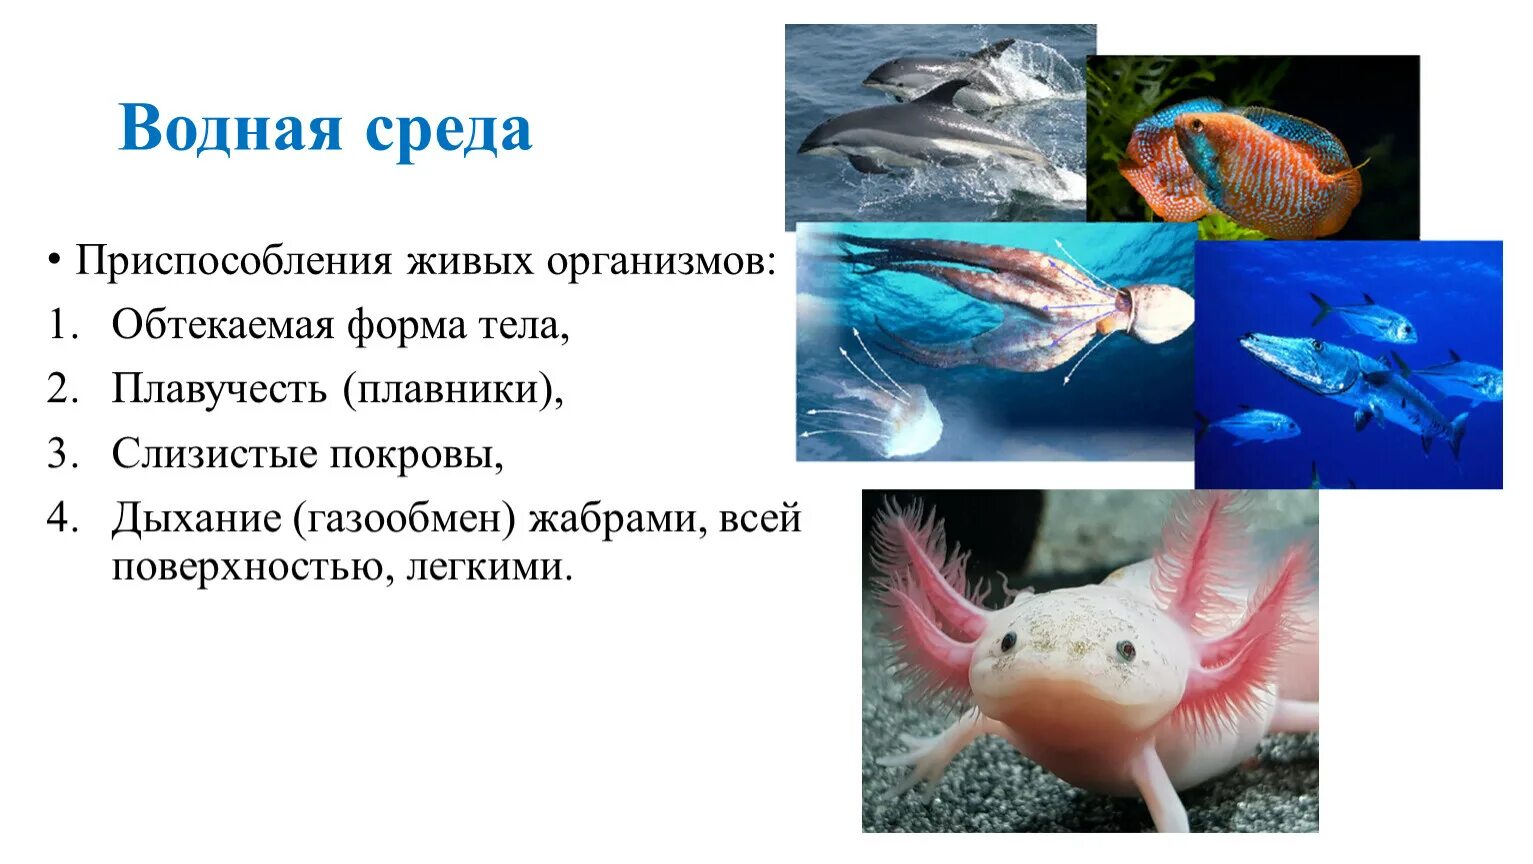 Примеры приспособленности к водной среде обитания. Водные животные. Приспособления животных к водной среде. Приспособленность организмов к водной среде. Формы тела организмов.